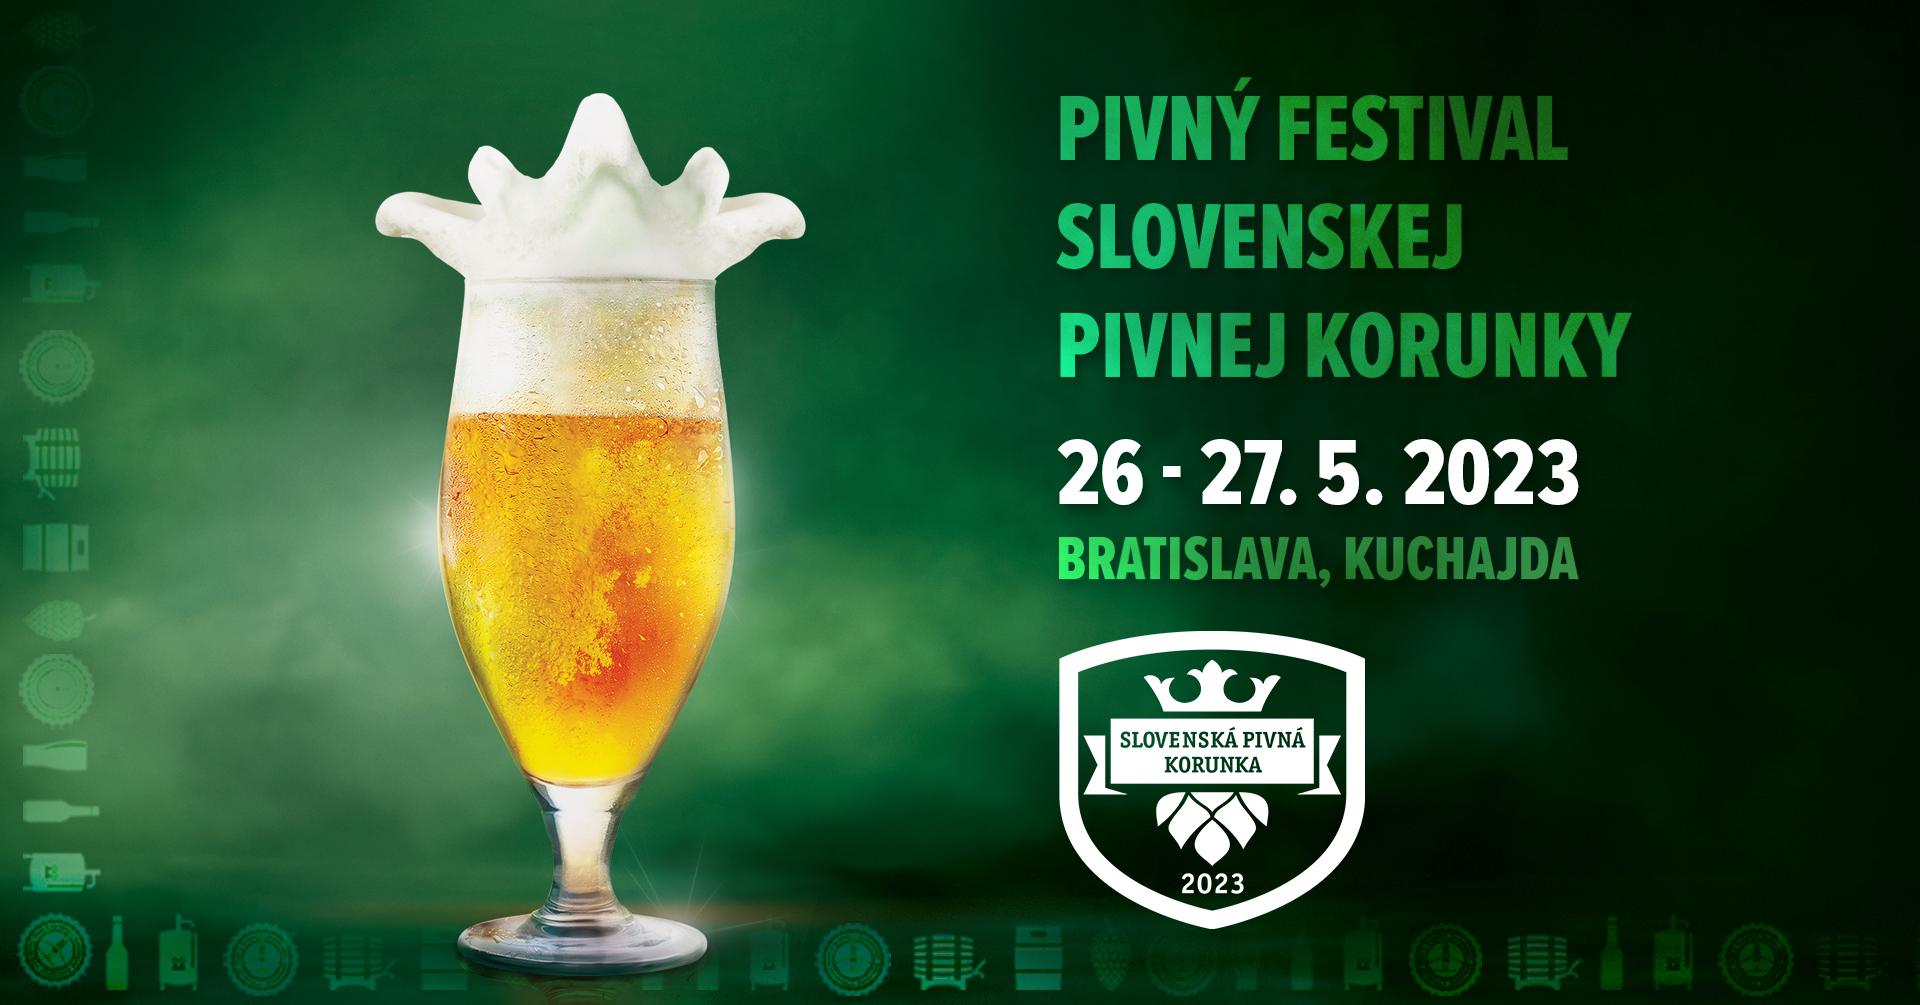 Pivn Festival Slovenskej Pivnej Korunky 2023 Bratislava